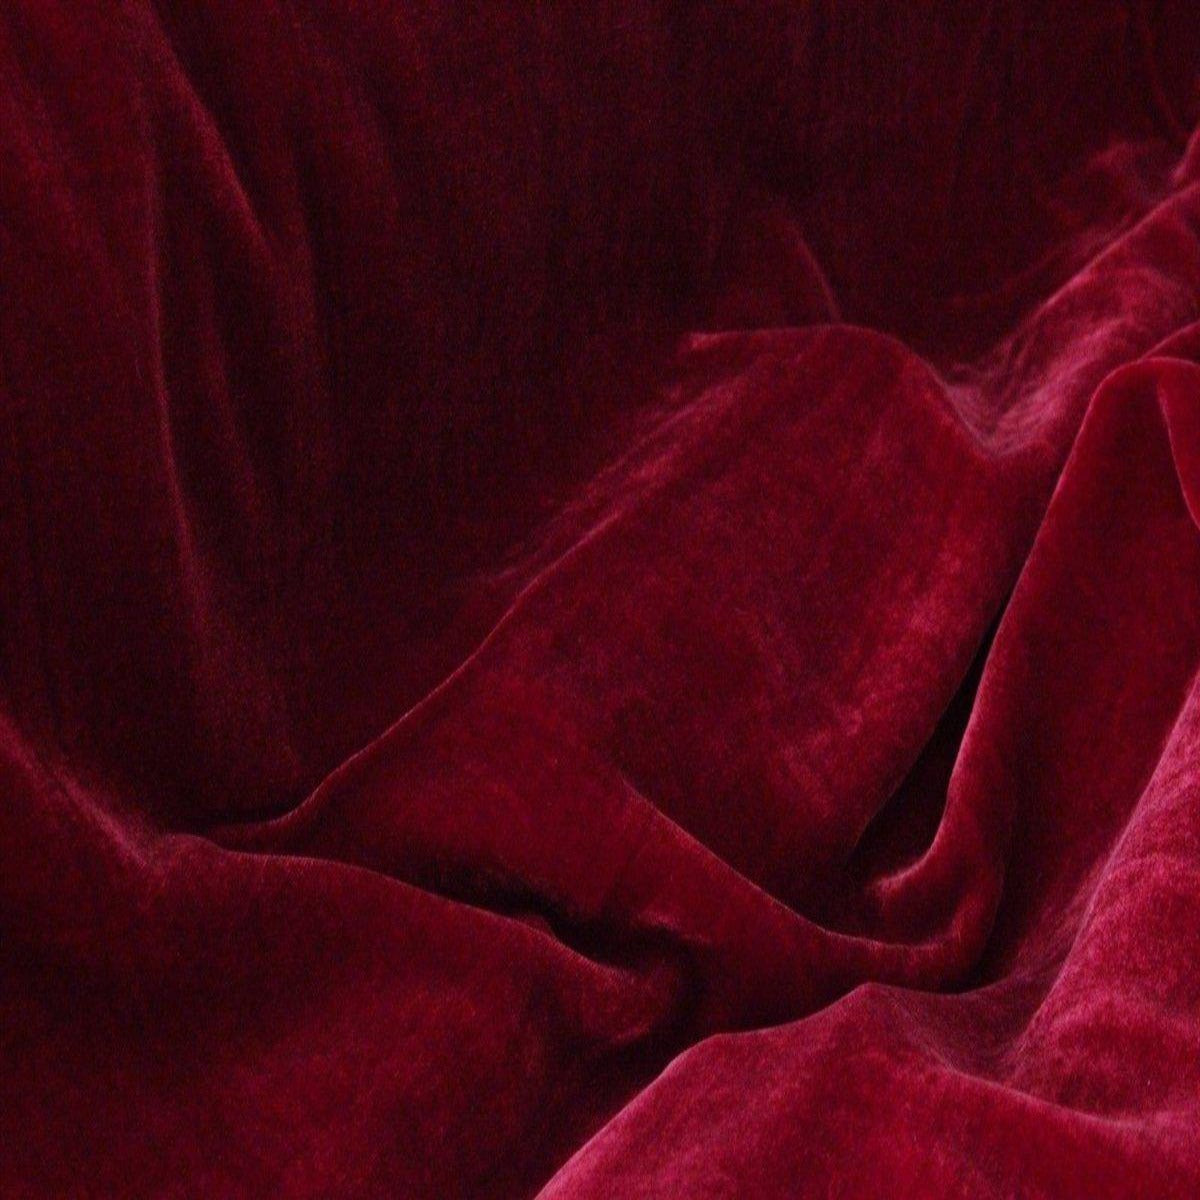 dark red velvet texture